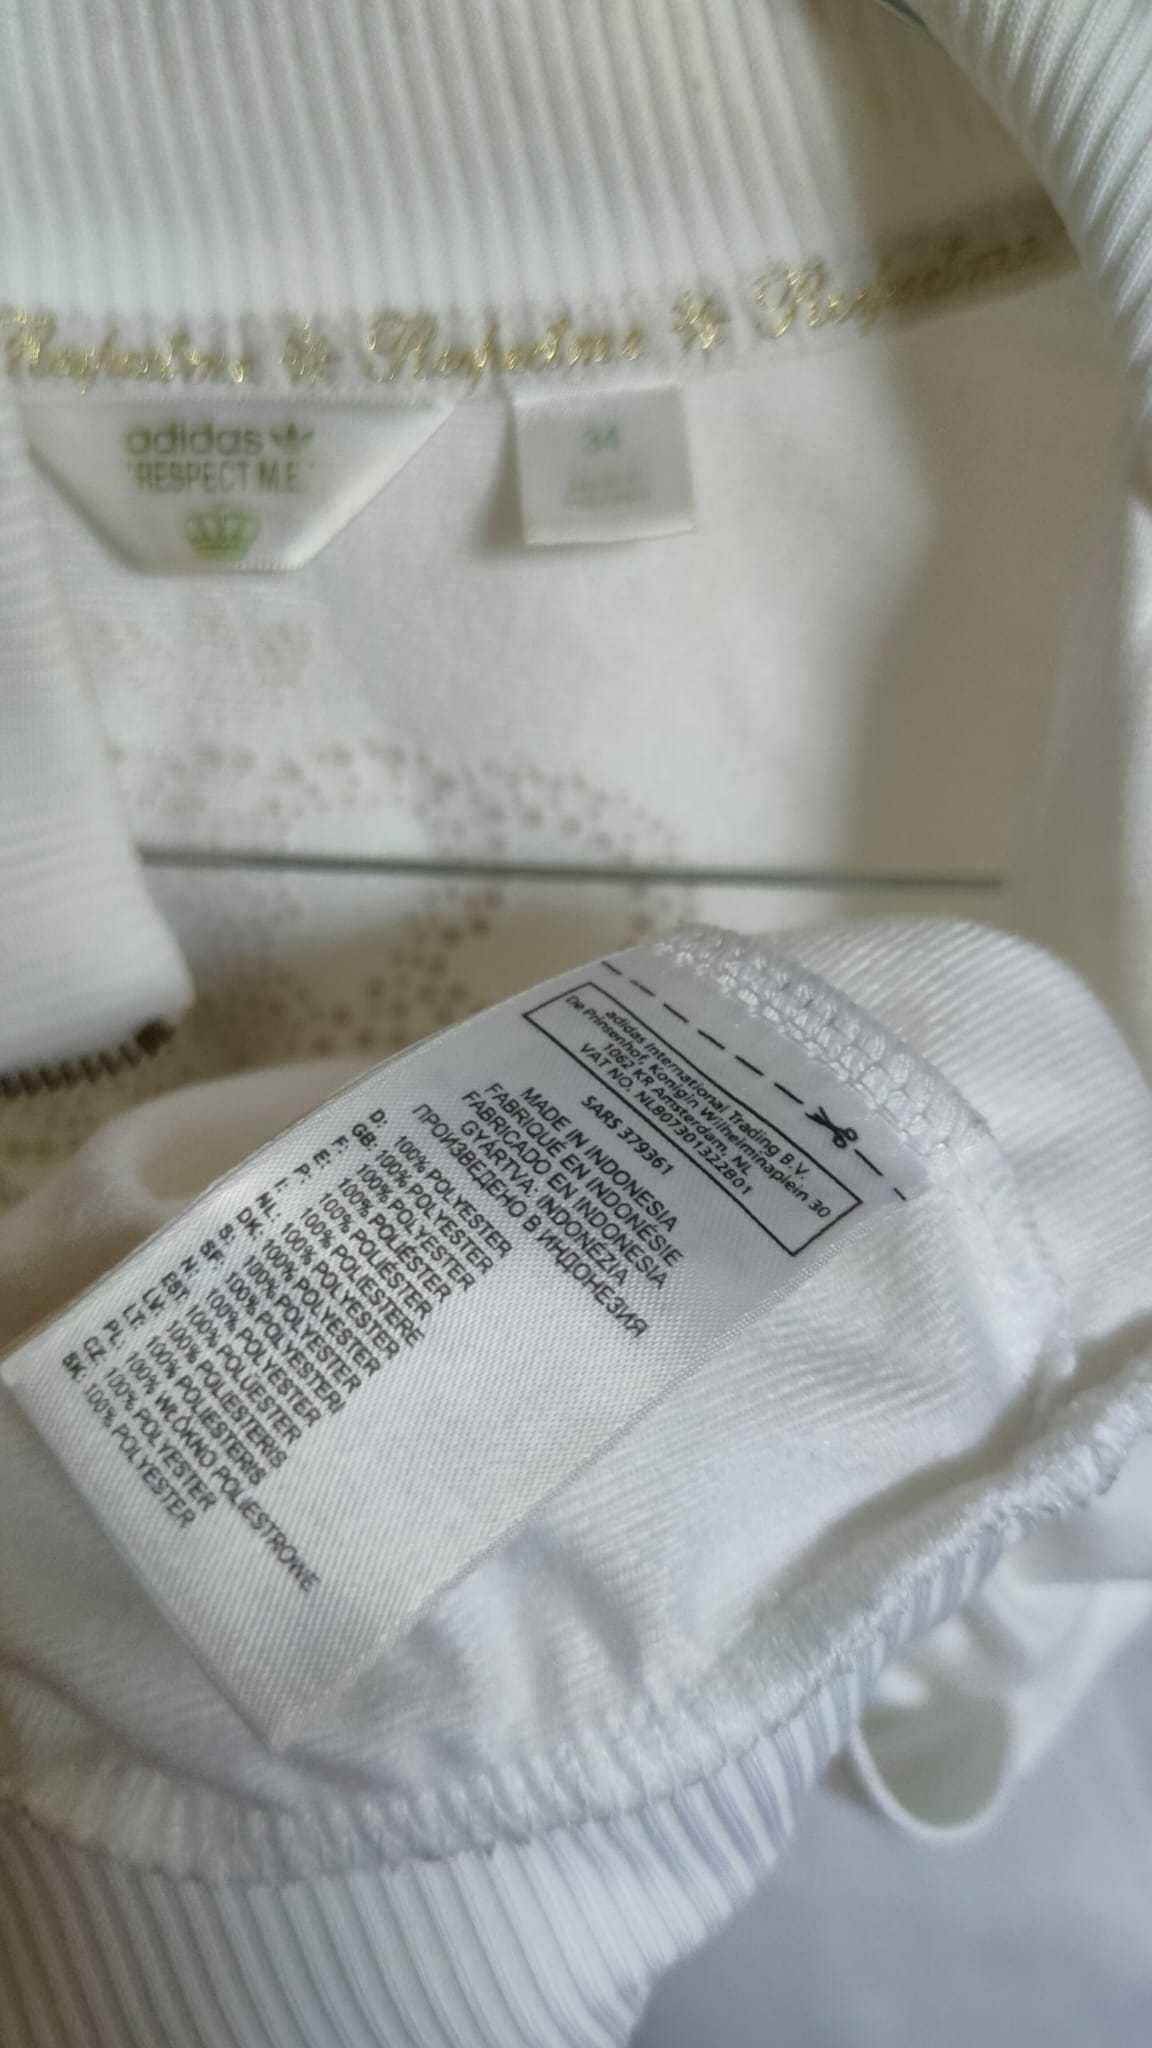 Adidas respect me Branco - Edição especial de coleção